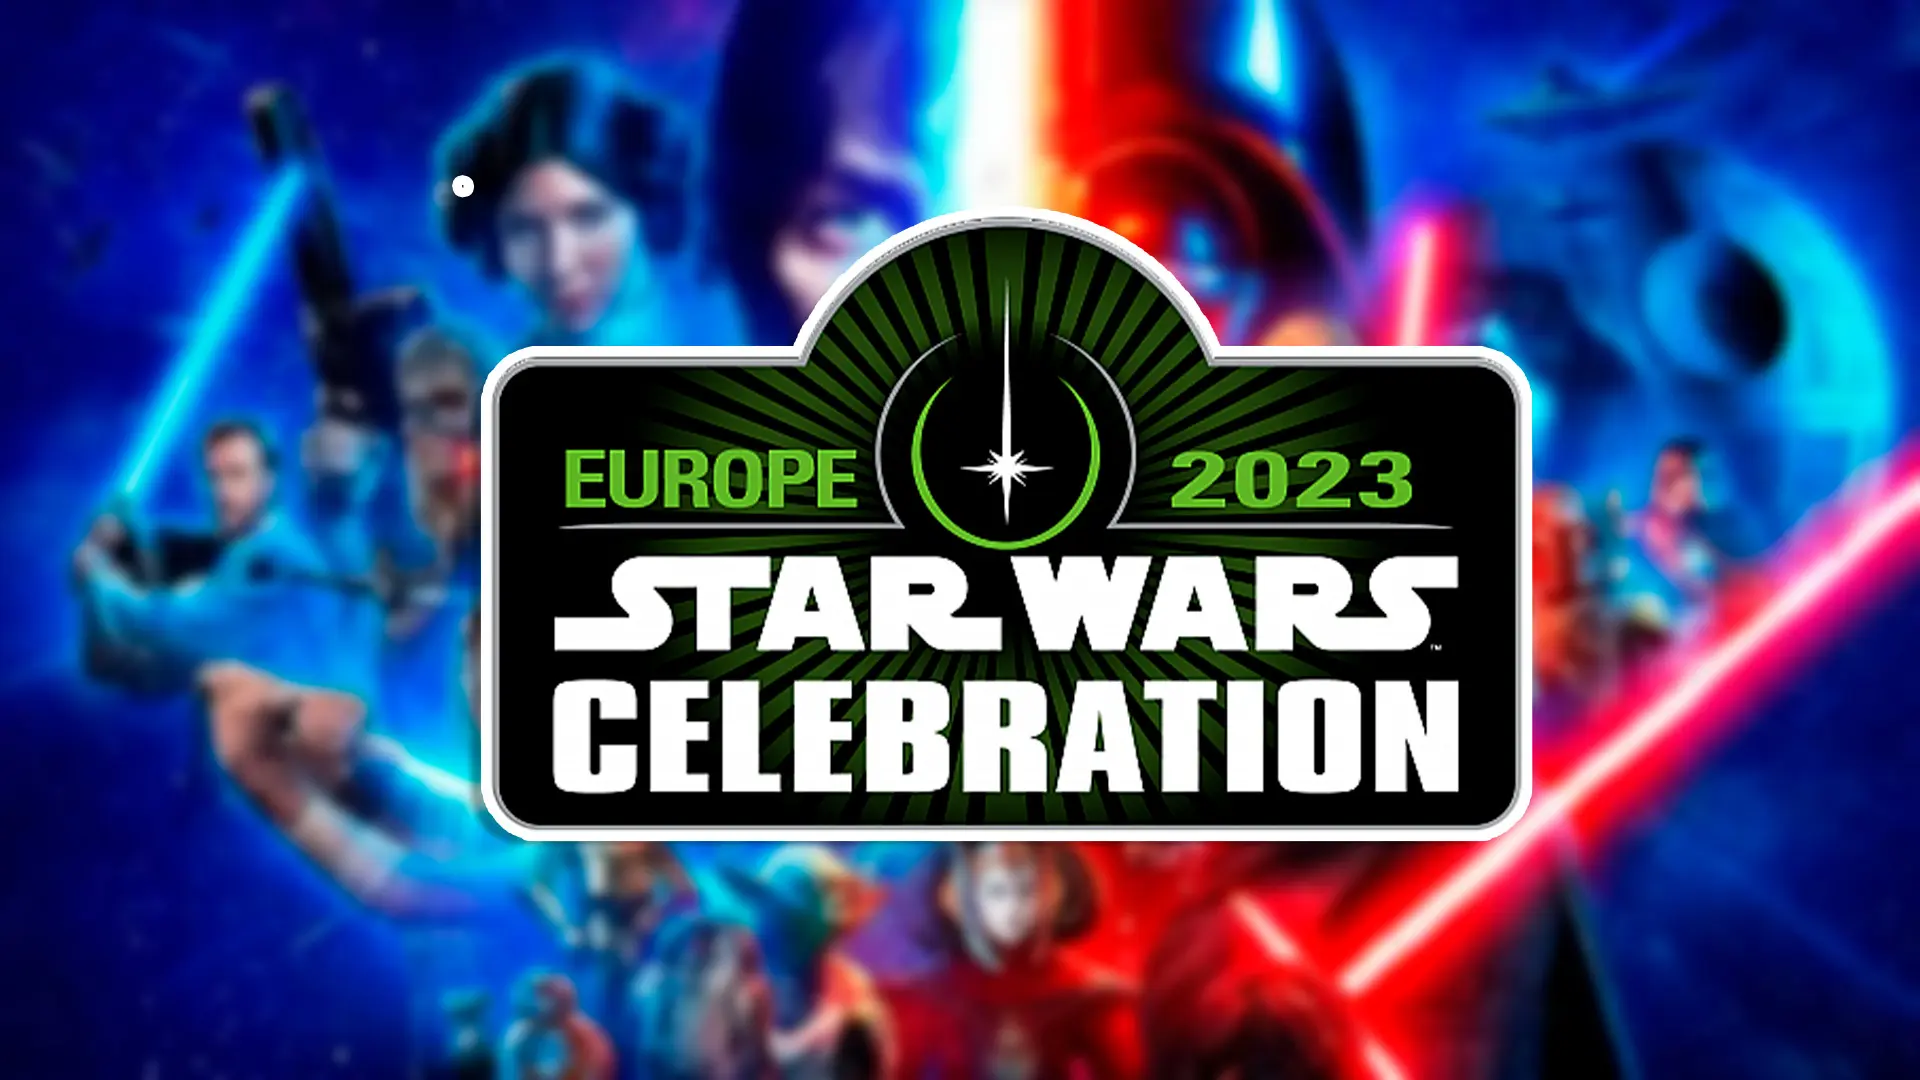 Ce qu'il fallait retenir de la Star Wars Celebration